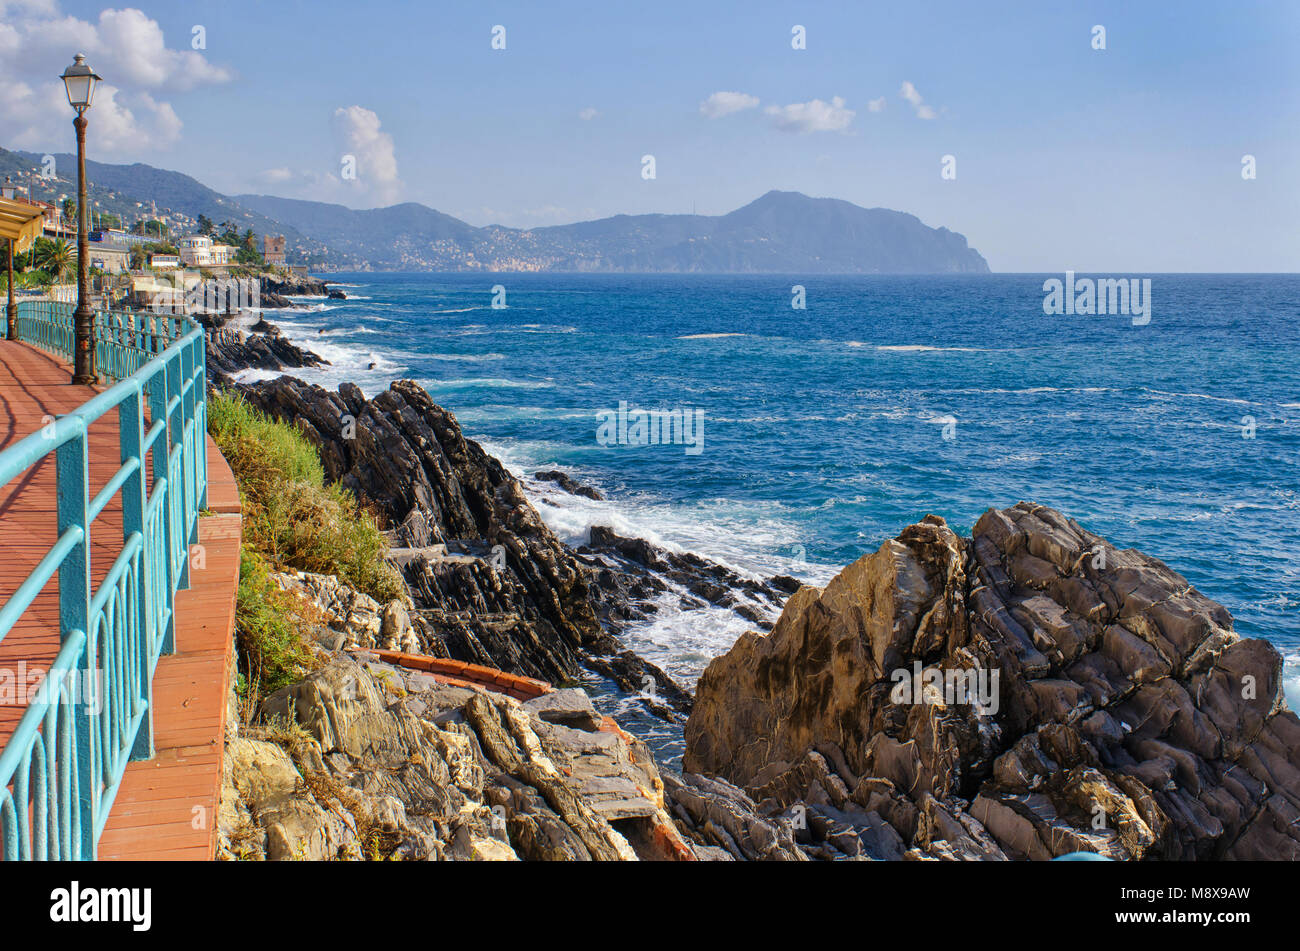 Vista dalla passeggiata sul lungomare di Genova Nervi a la costa ligure e le colline di Portofino in mare su una bella giornata di sole Foto Stock